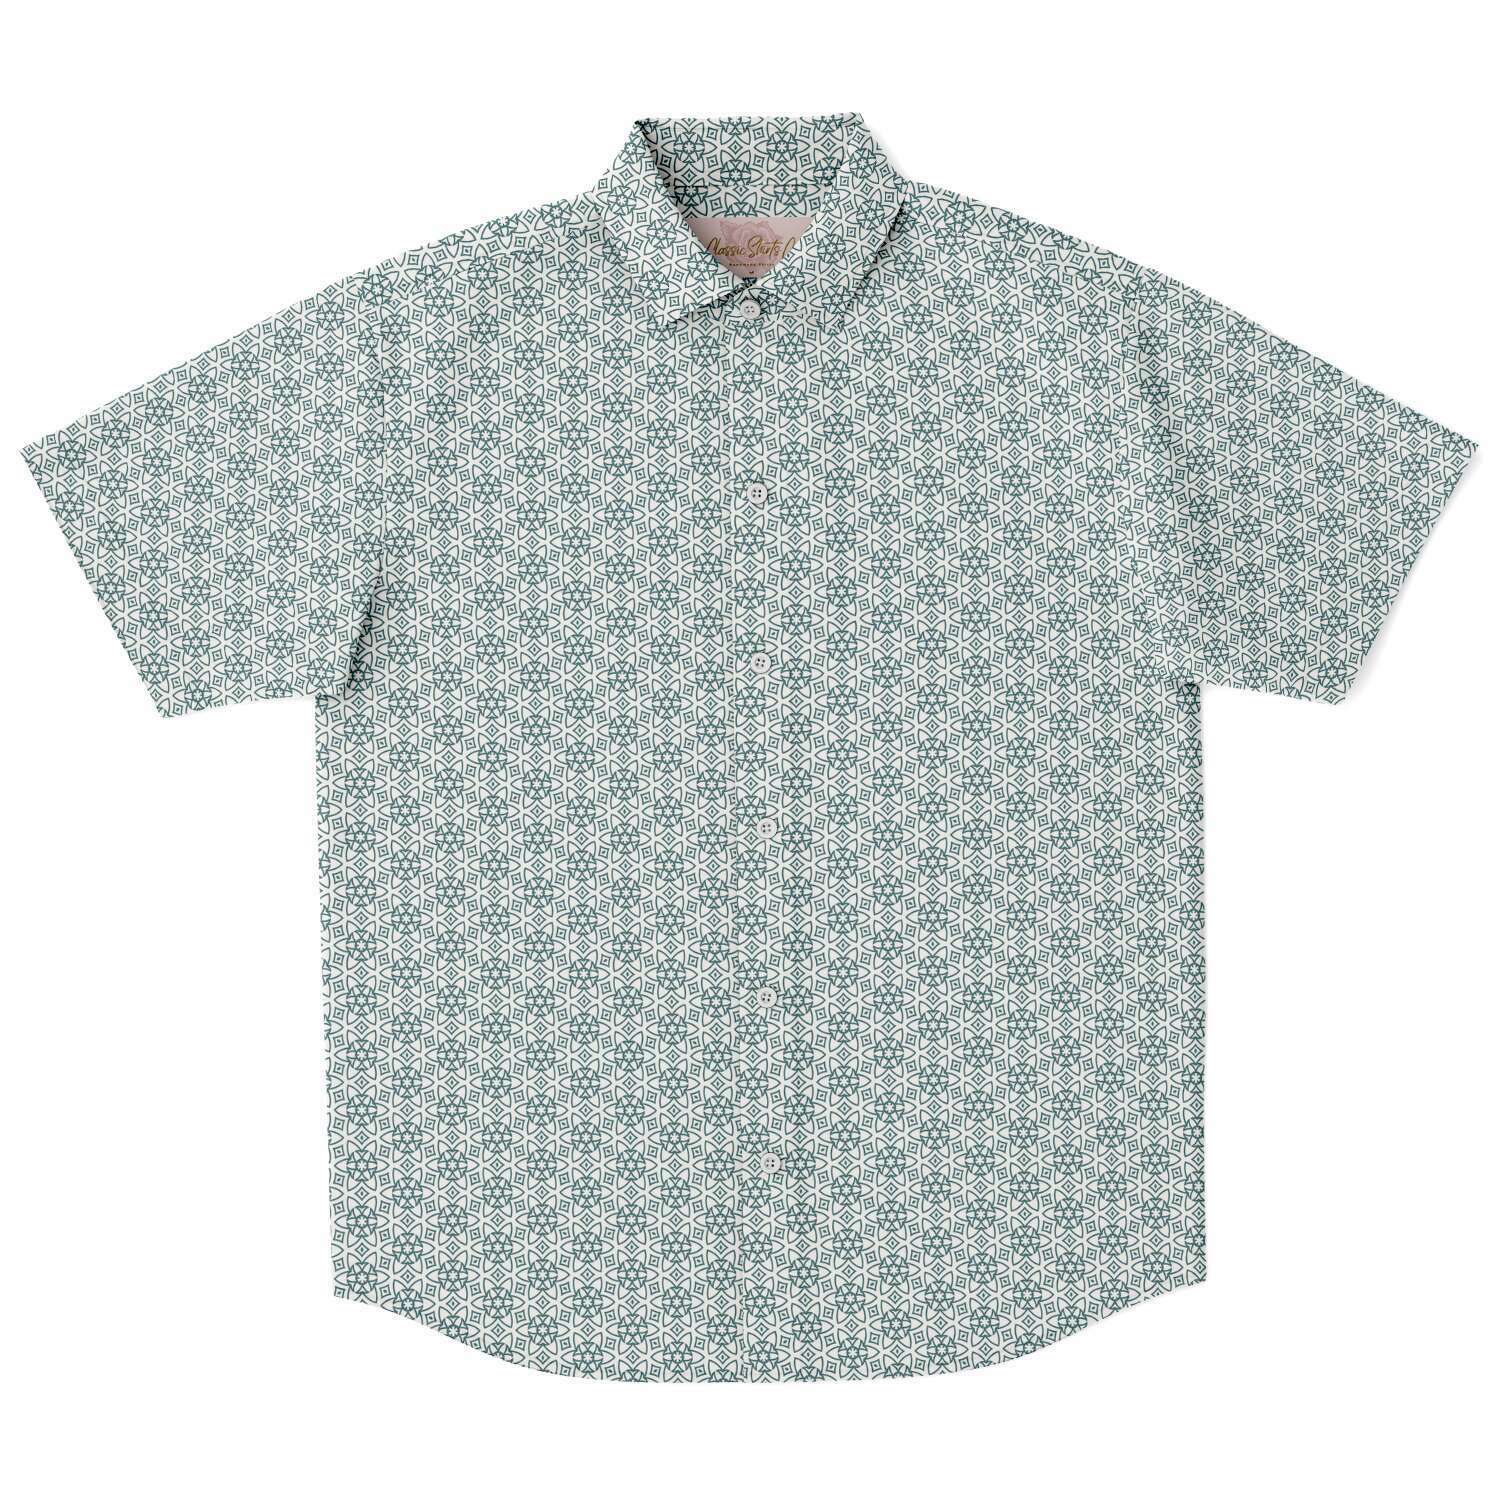 Jade Green Floral Geometric Men's Short Sleeve Button Down Shirt - kayzers